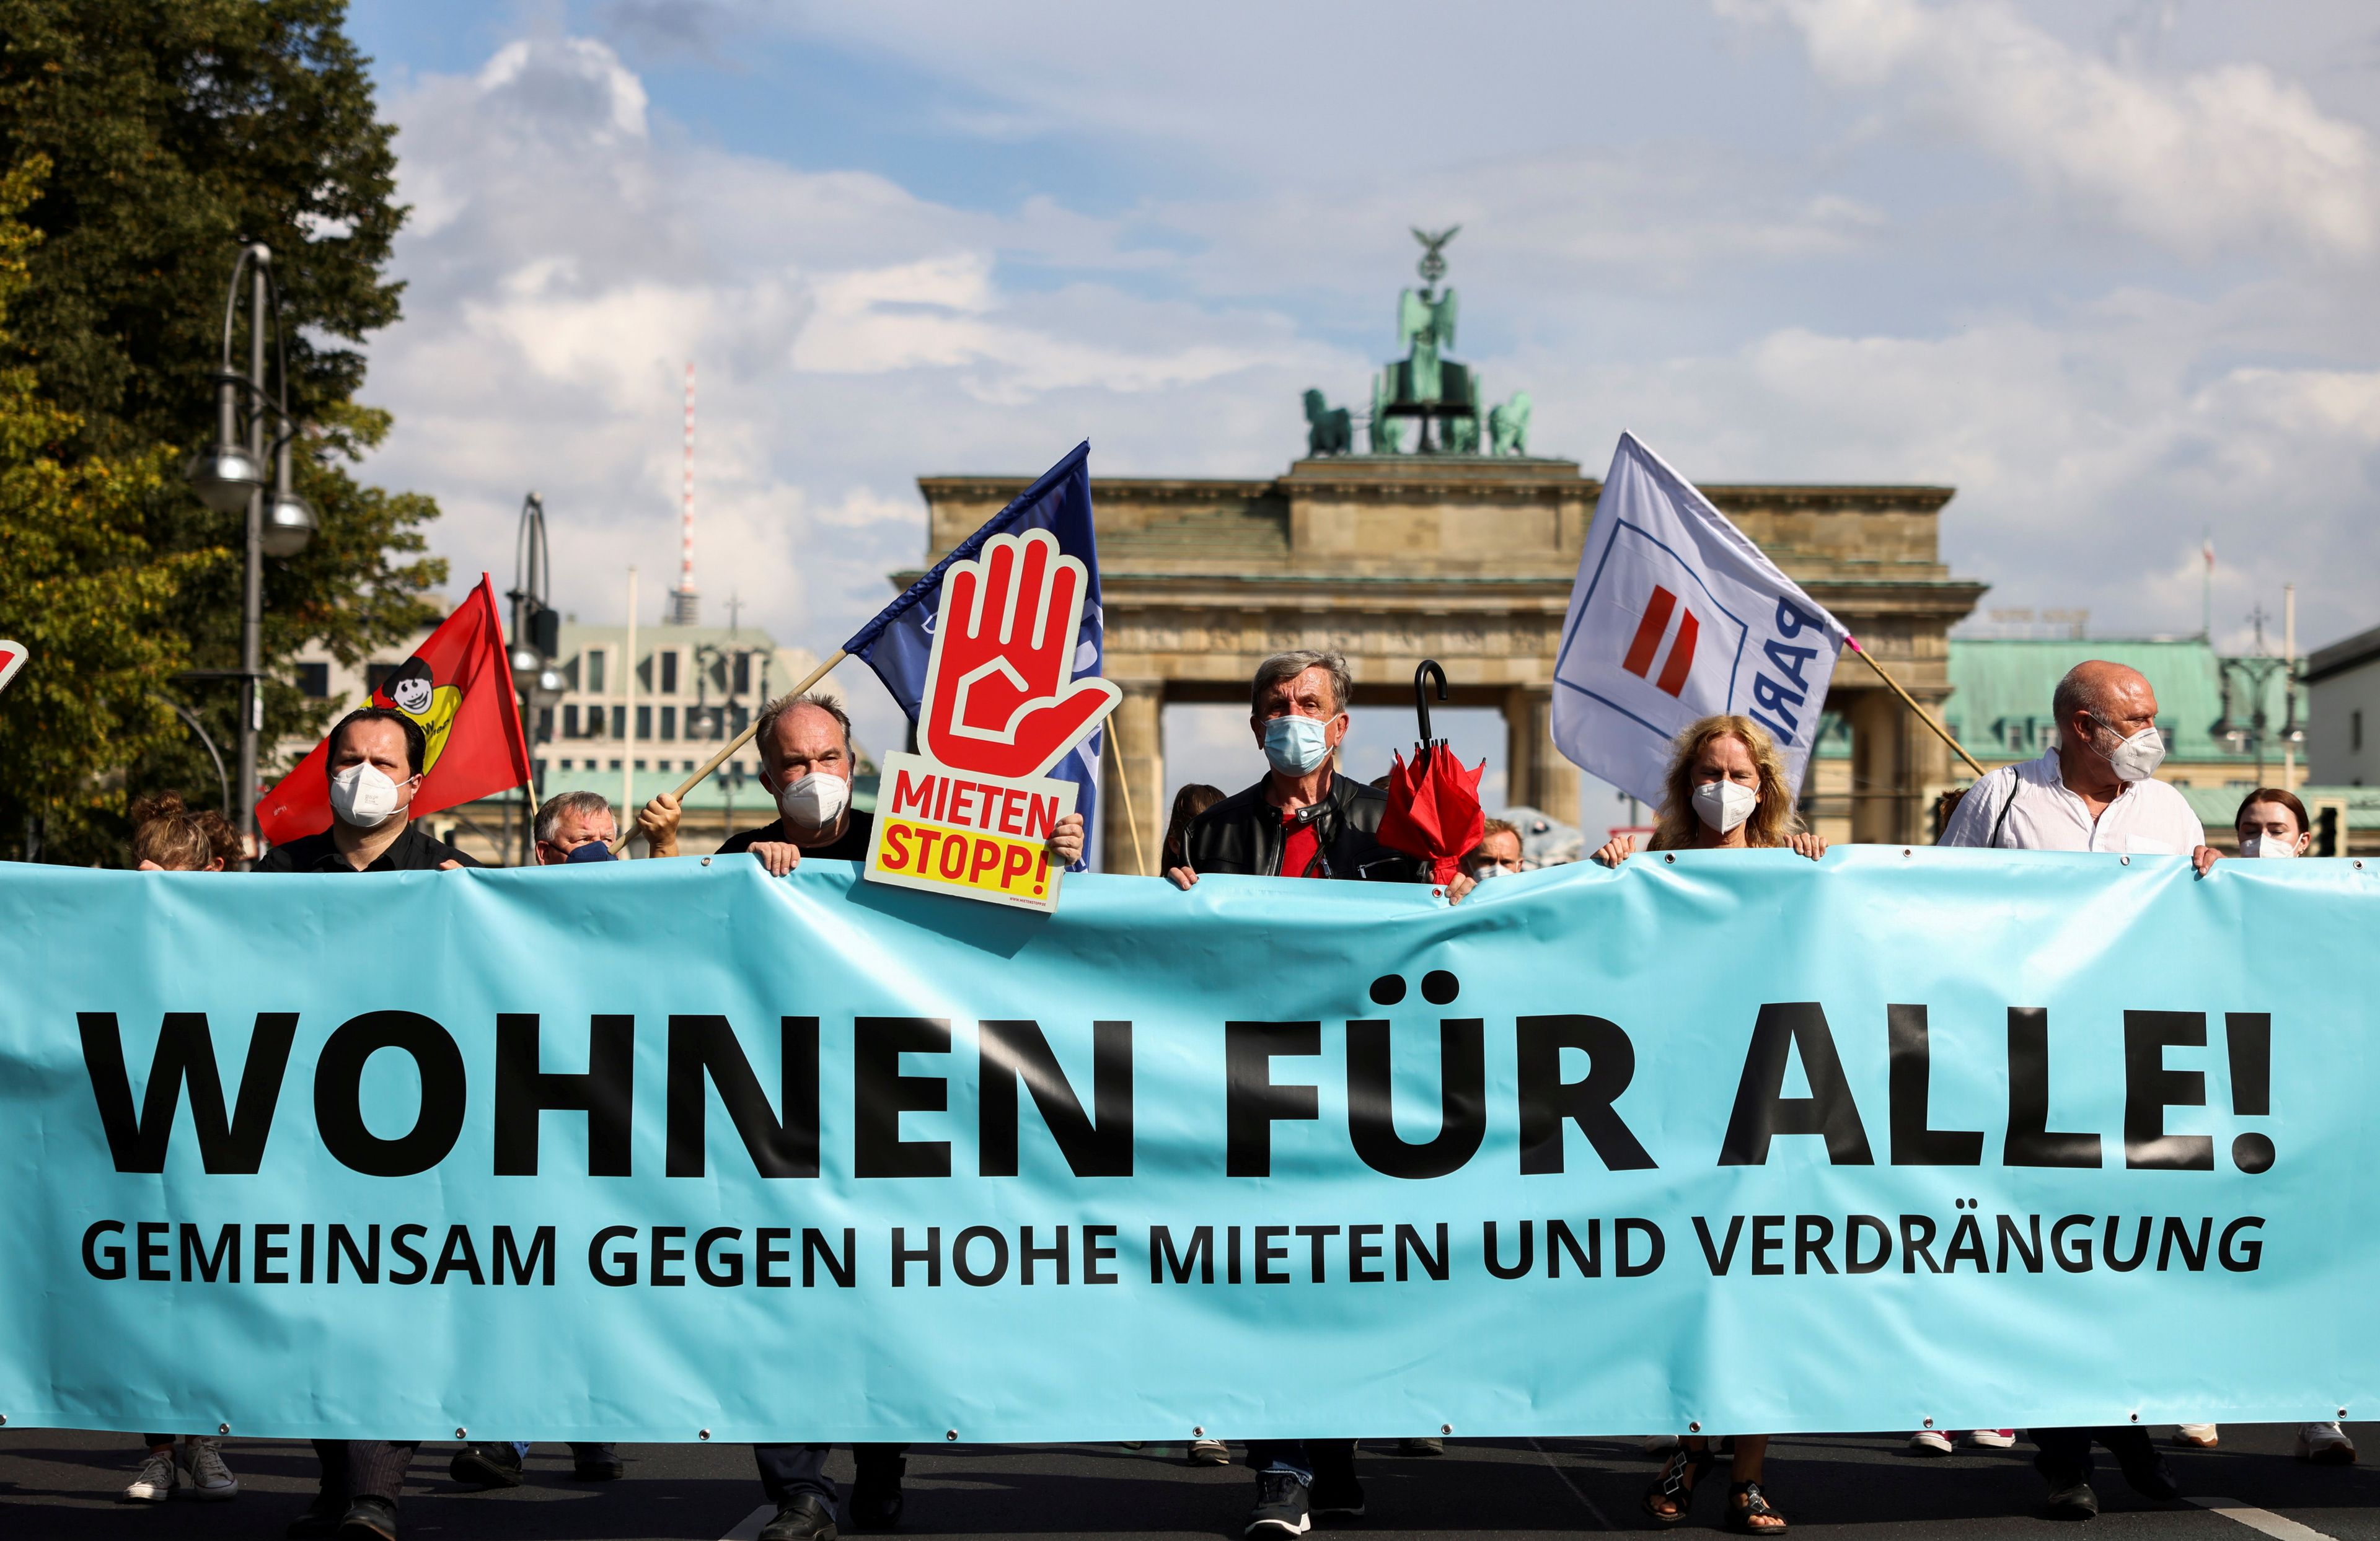 Protestas en Berlín contra el encarecimiento de los alquileres